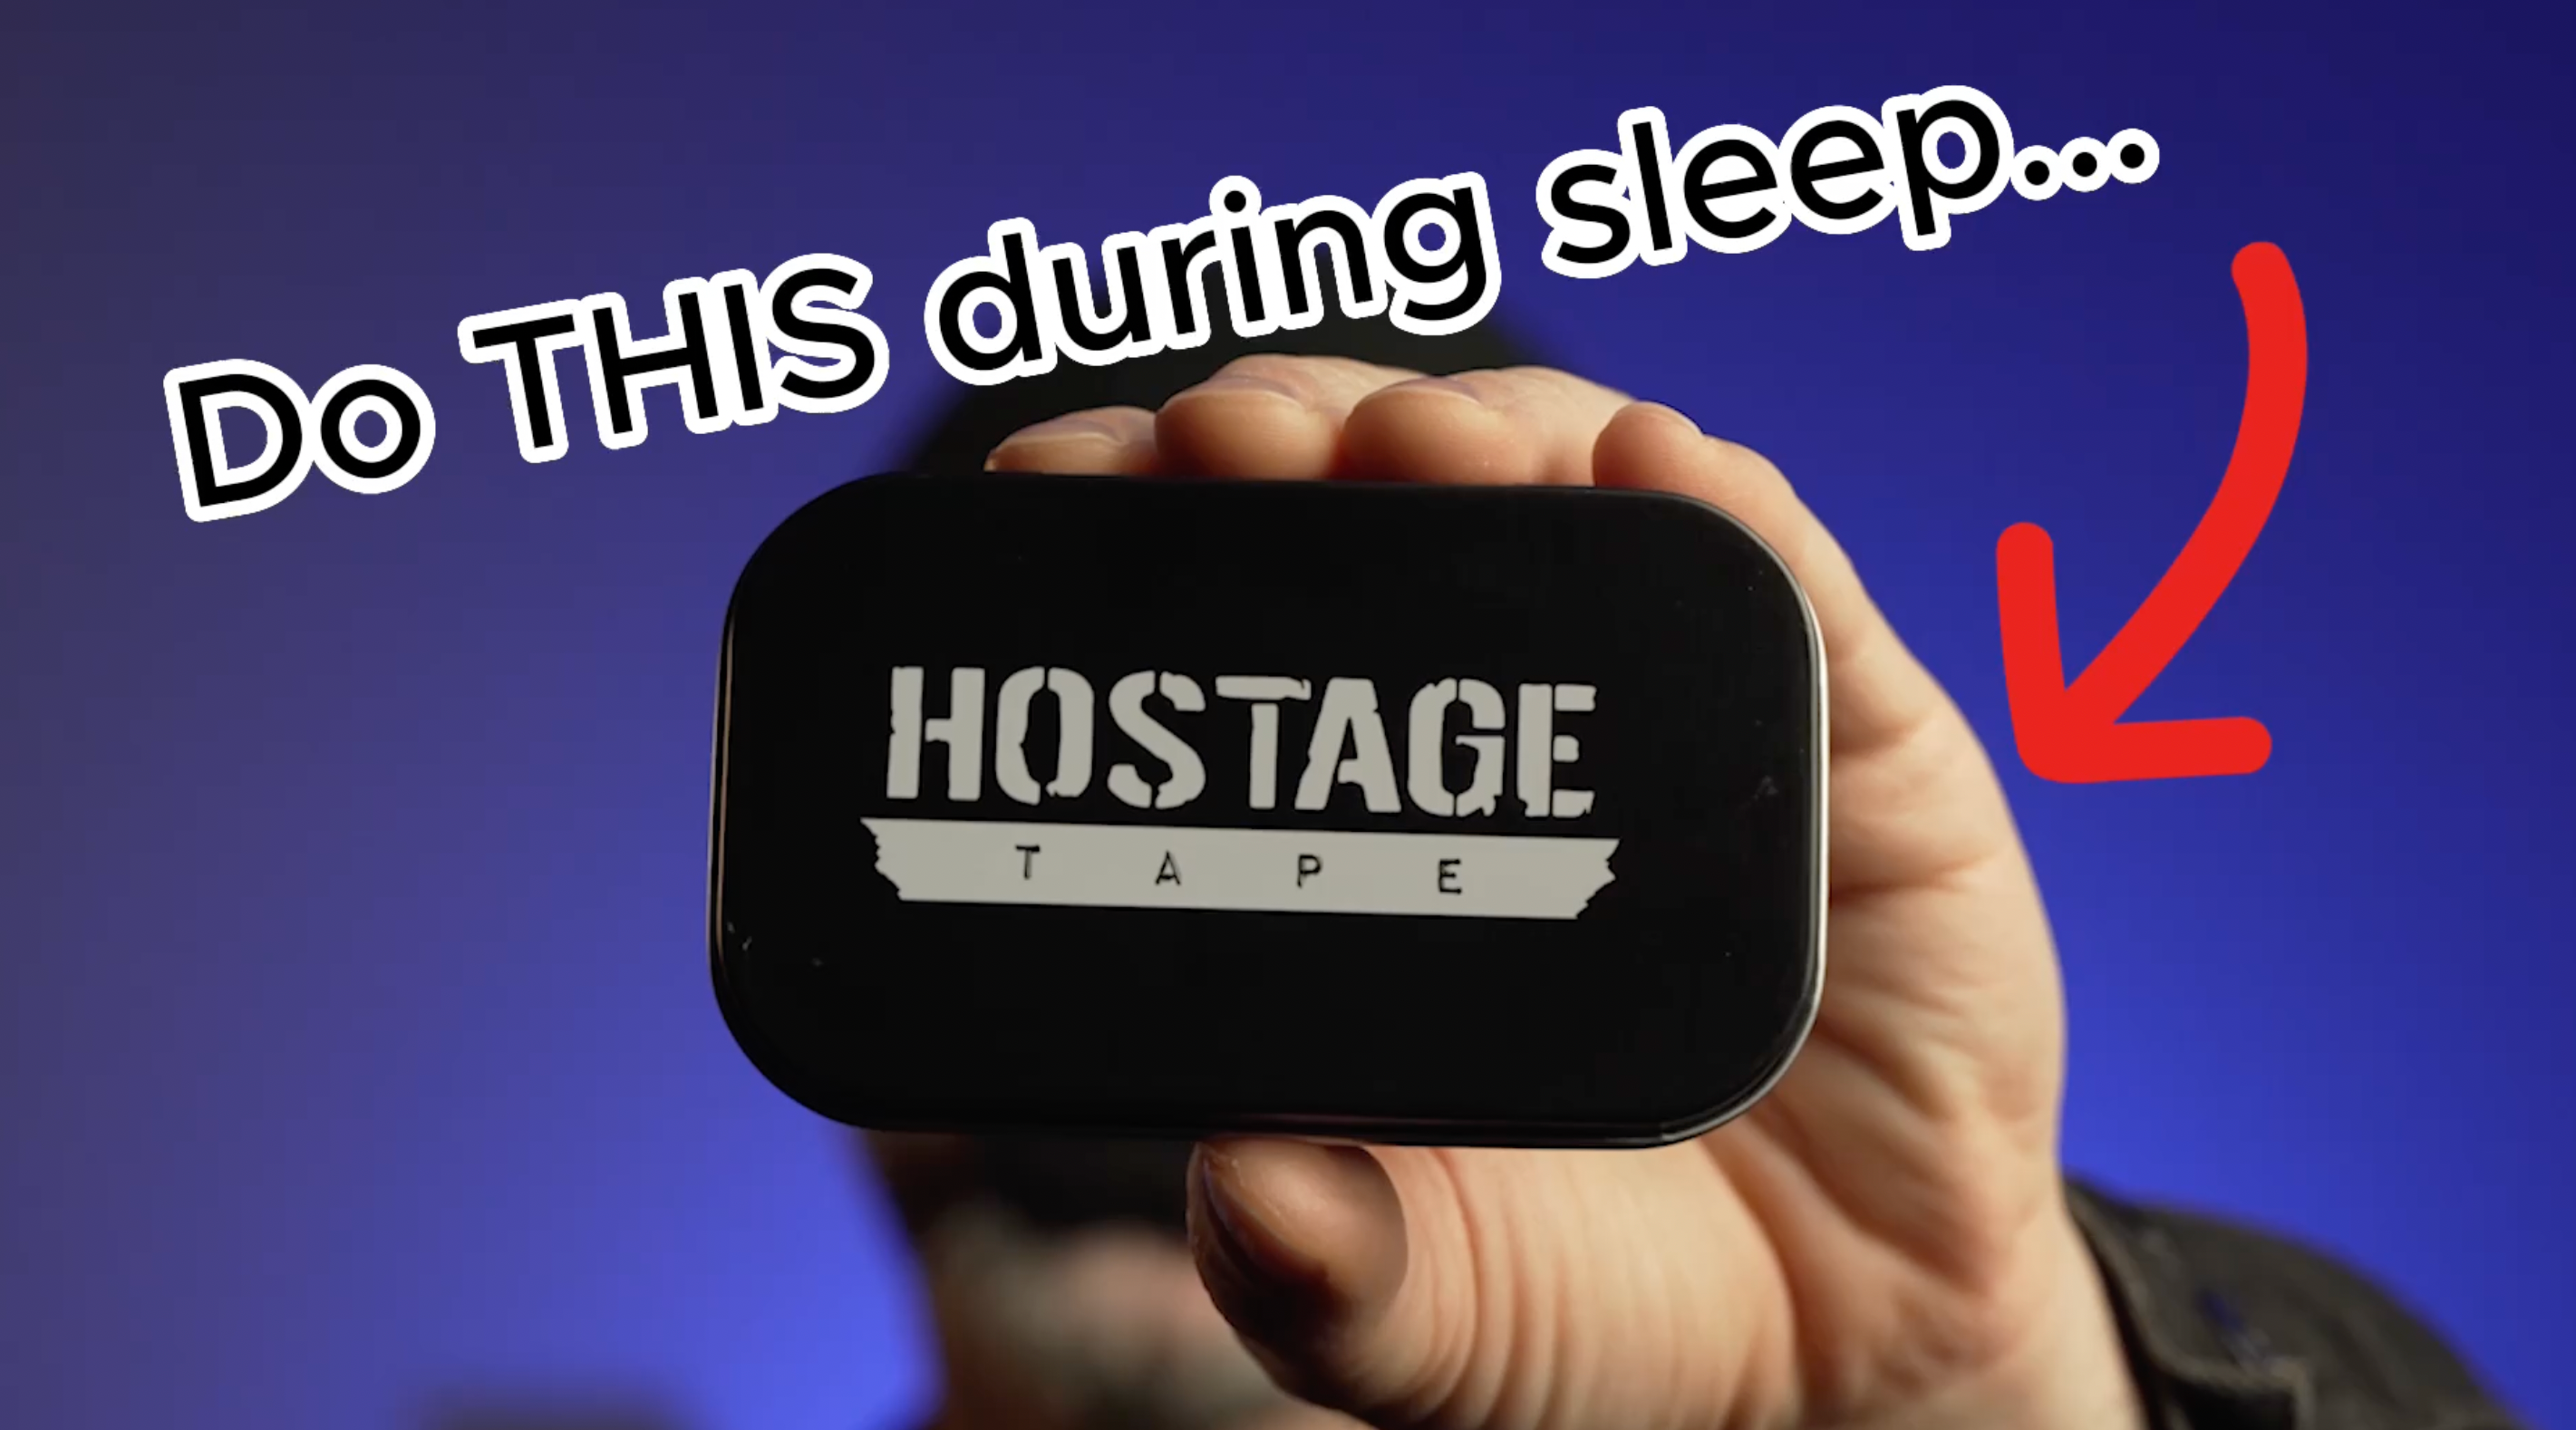 hostagetape.com